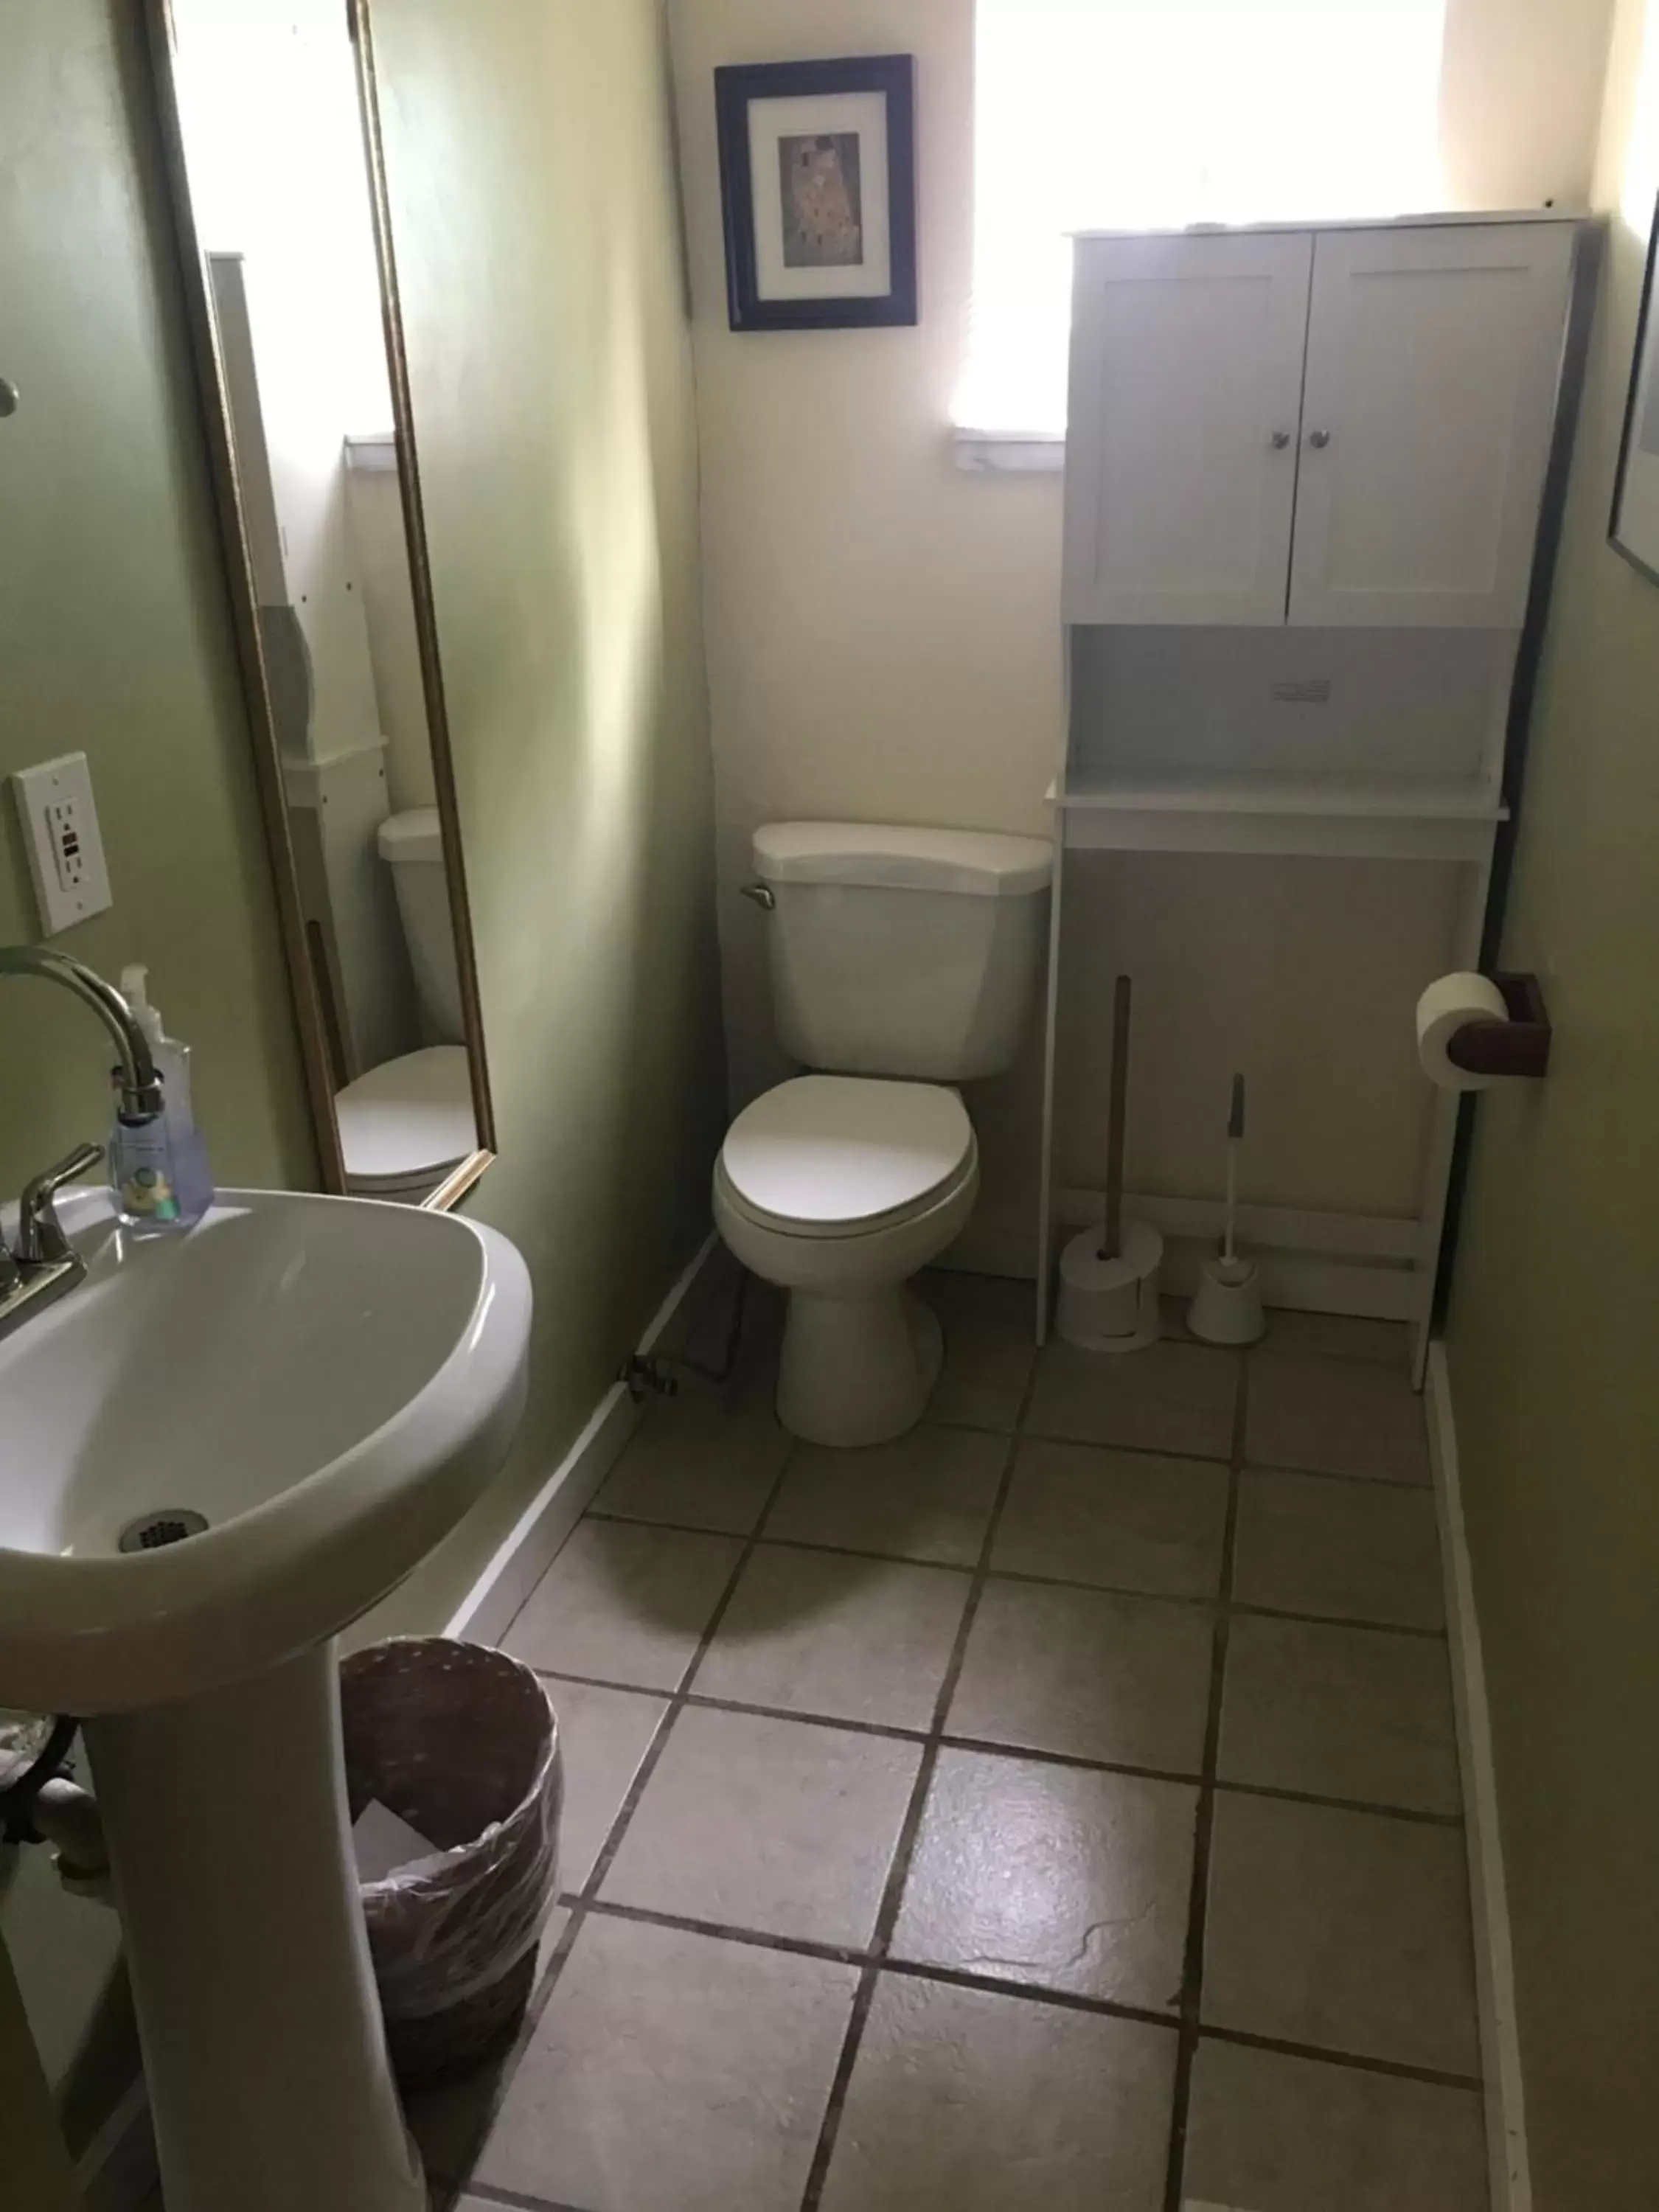 Bathroom in Mancos Inn